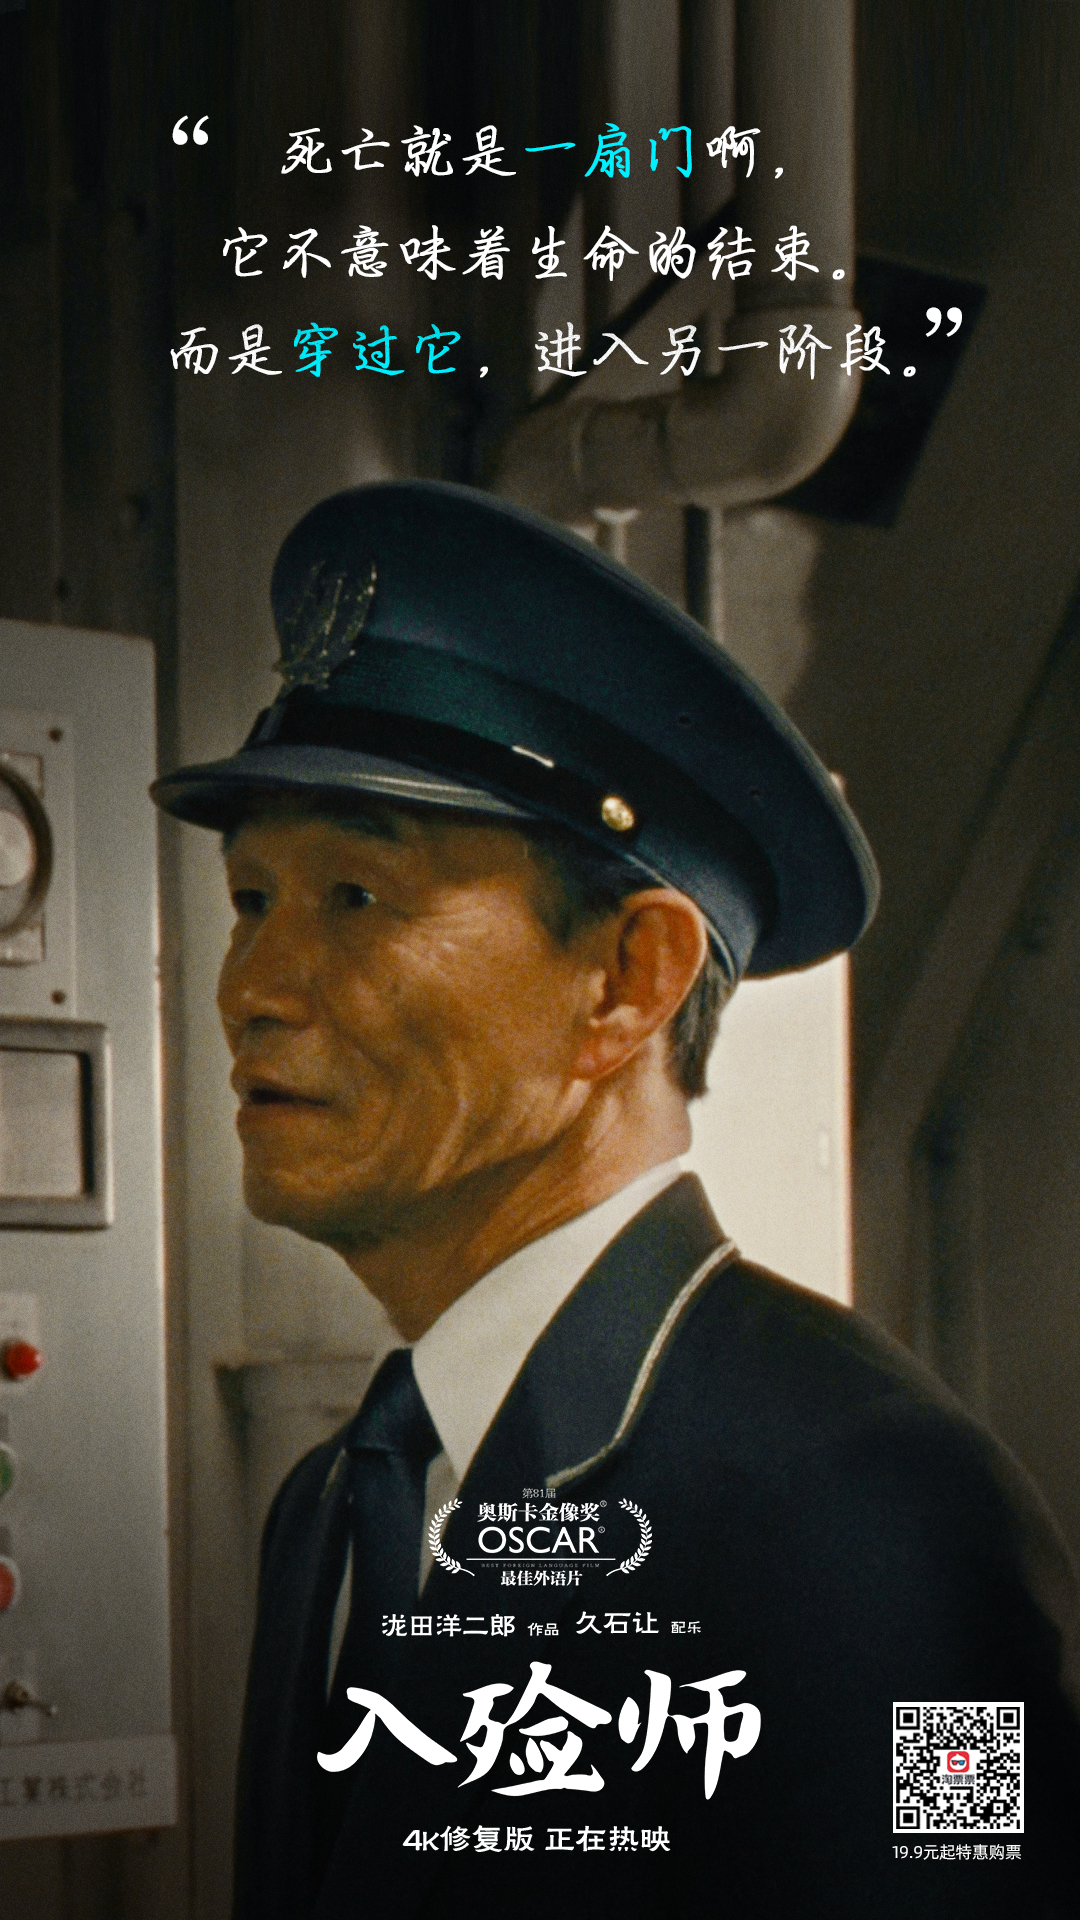 日本电影《入殓师》 男主角的工作就是为… - 堆糖，美图壁纸兴趣社区